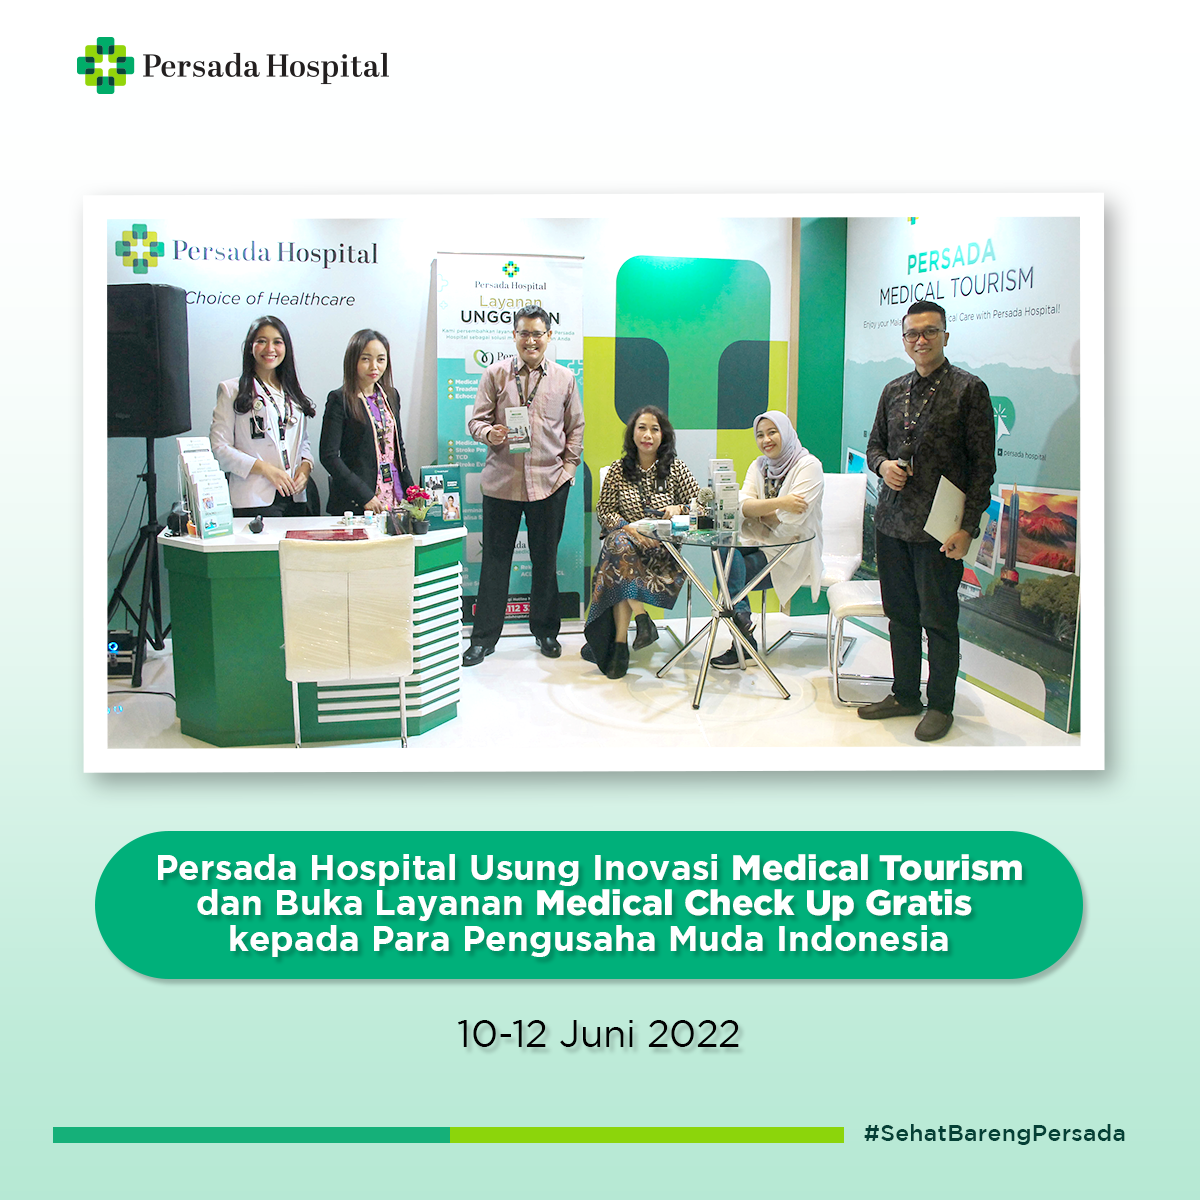 persada-hospital-usung-inovasi-medical-tourism-dan-buka-layanan-medical-check-up-gratis-kepada-para-pengusaha-muda-indonesia